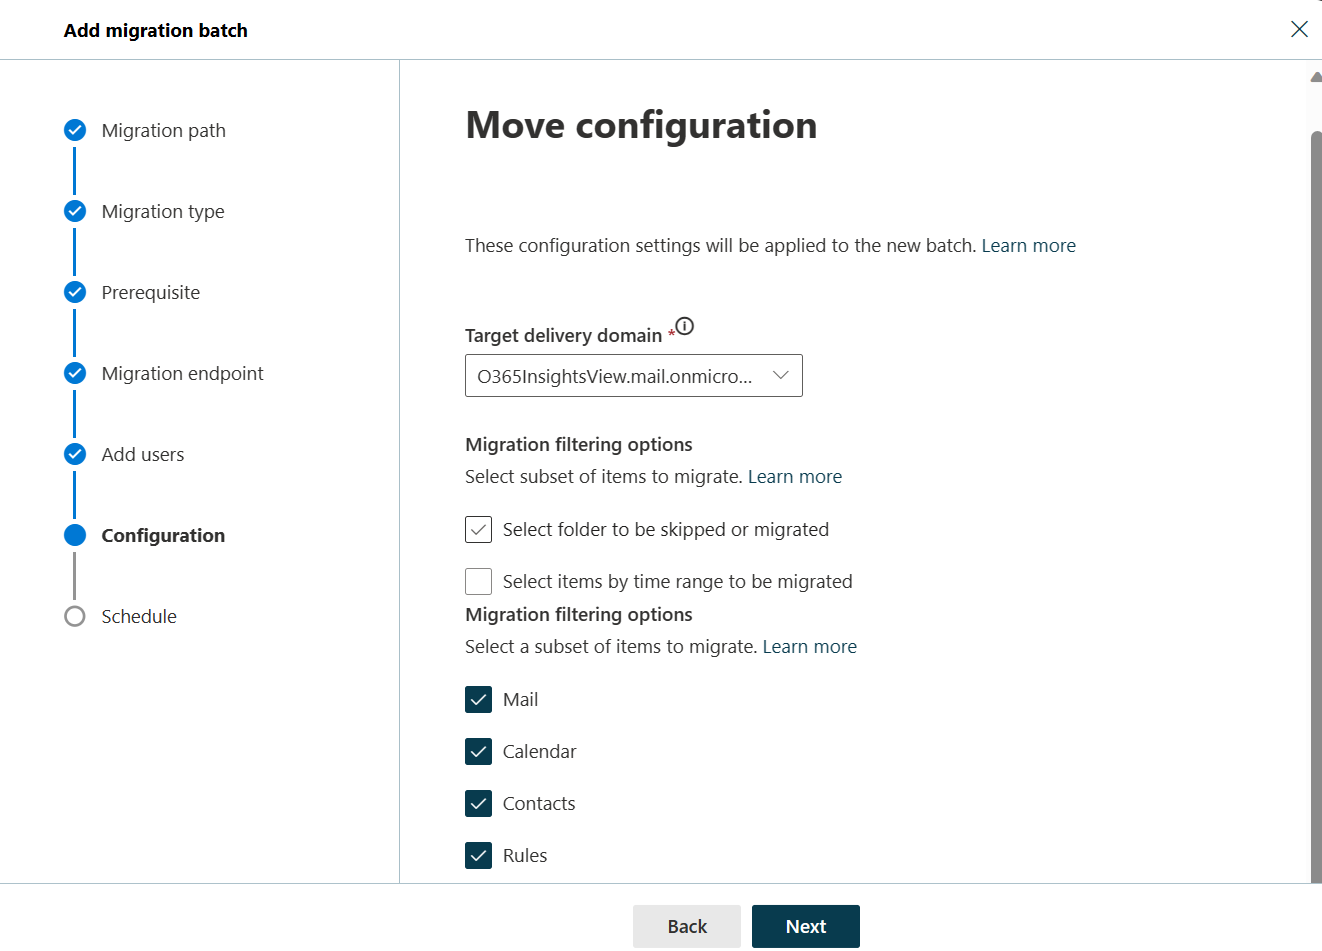 Captura de pantalla del cuadro de diálogo Mover configuración donde el usuario puede seleccionar el dominio de entrega de destino. El cuadro de diálogo también muestra las opciones de filtrado de migración con las carpetas Correo, Calendario, Contactos y Reglas activadas.